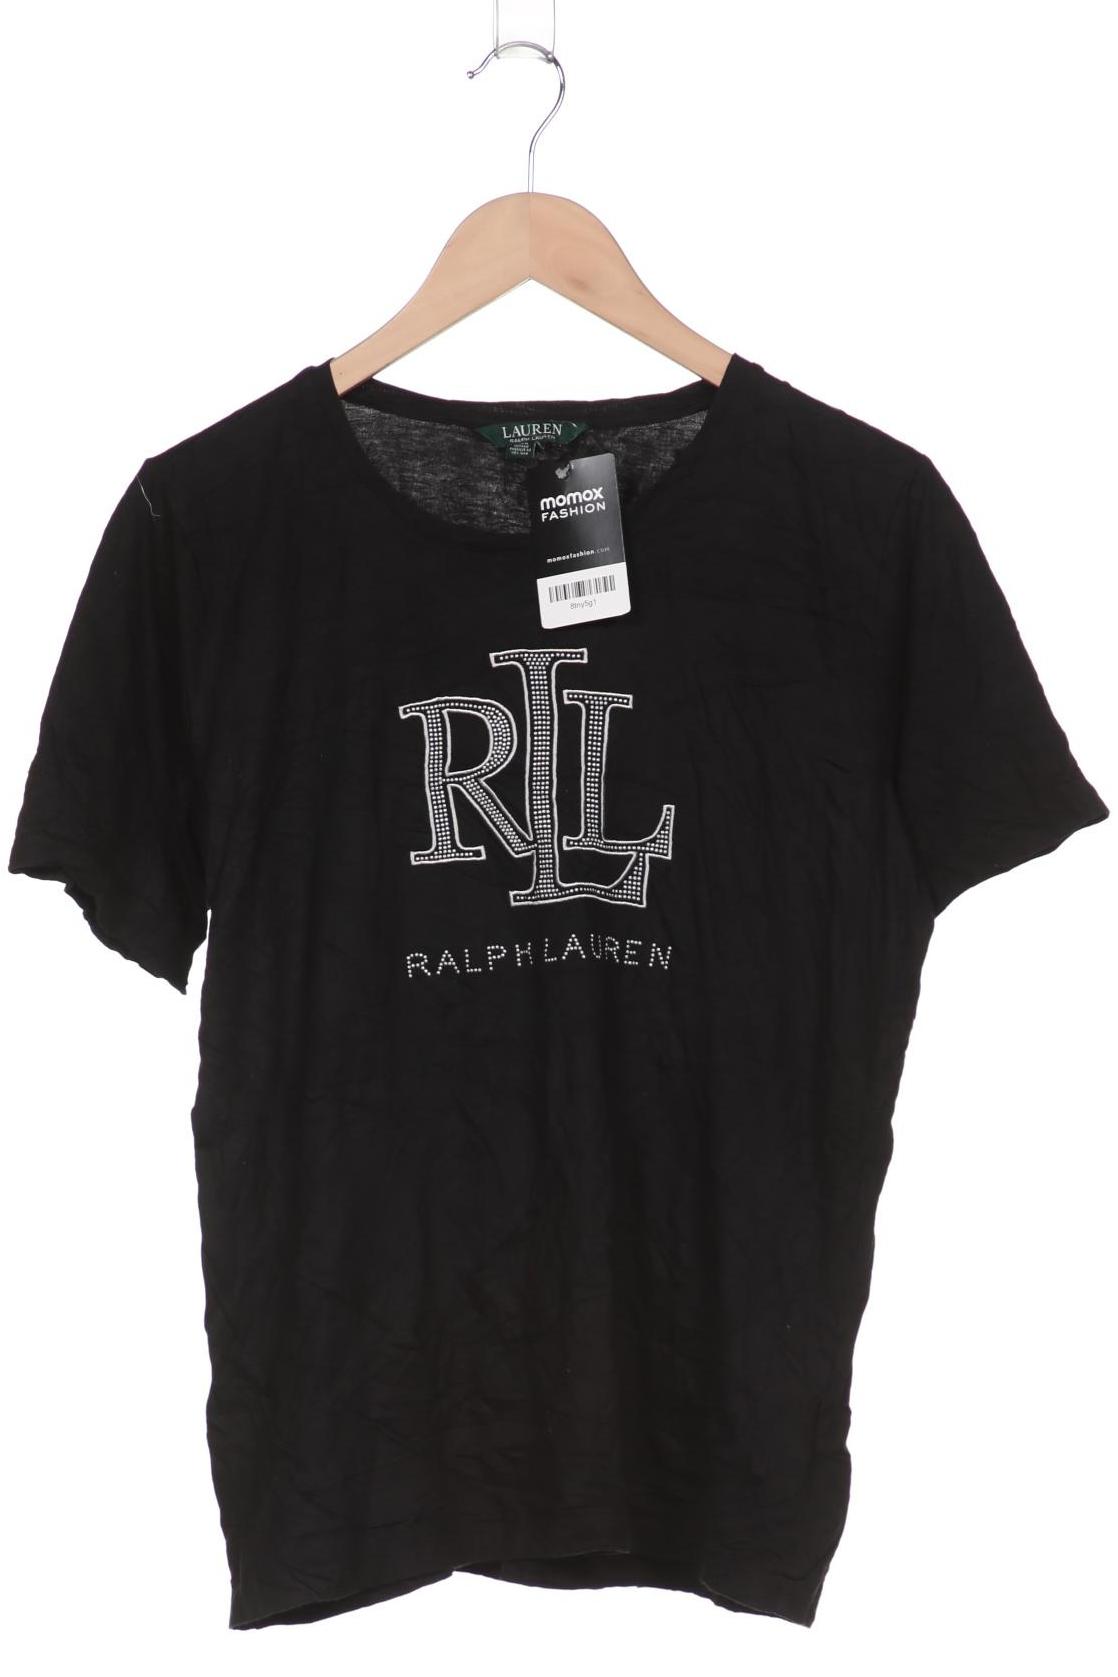 Lauren Ralph Lauren Damen T-Shirt, schwarz, Gr. 42 von Lauren Ralph Lauren